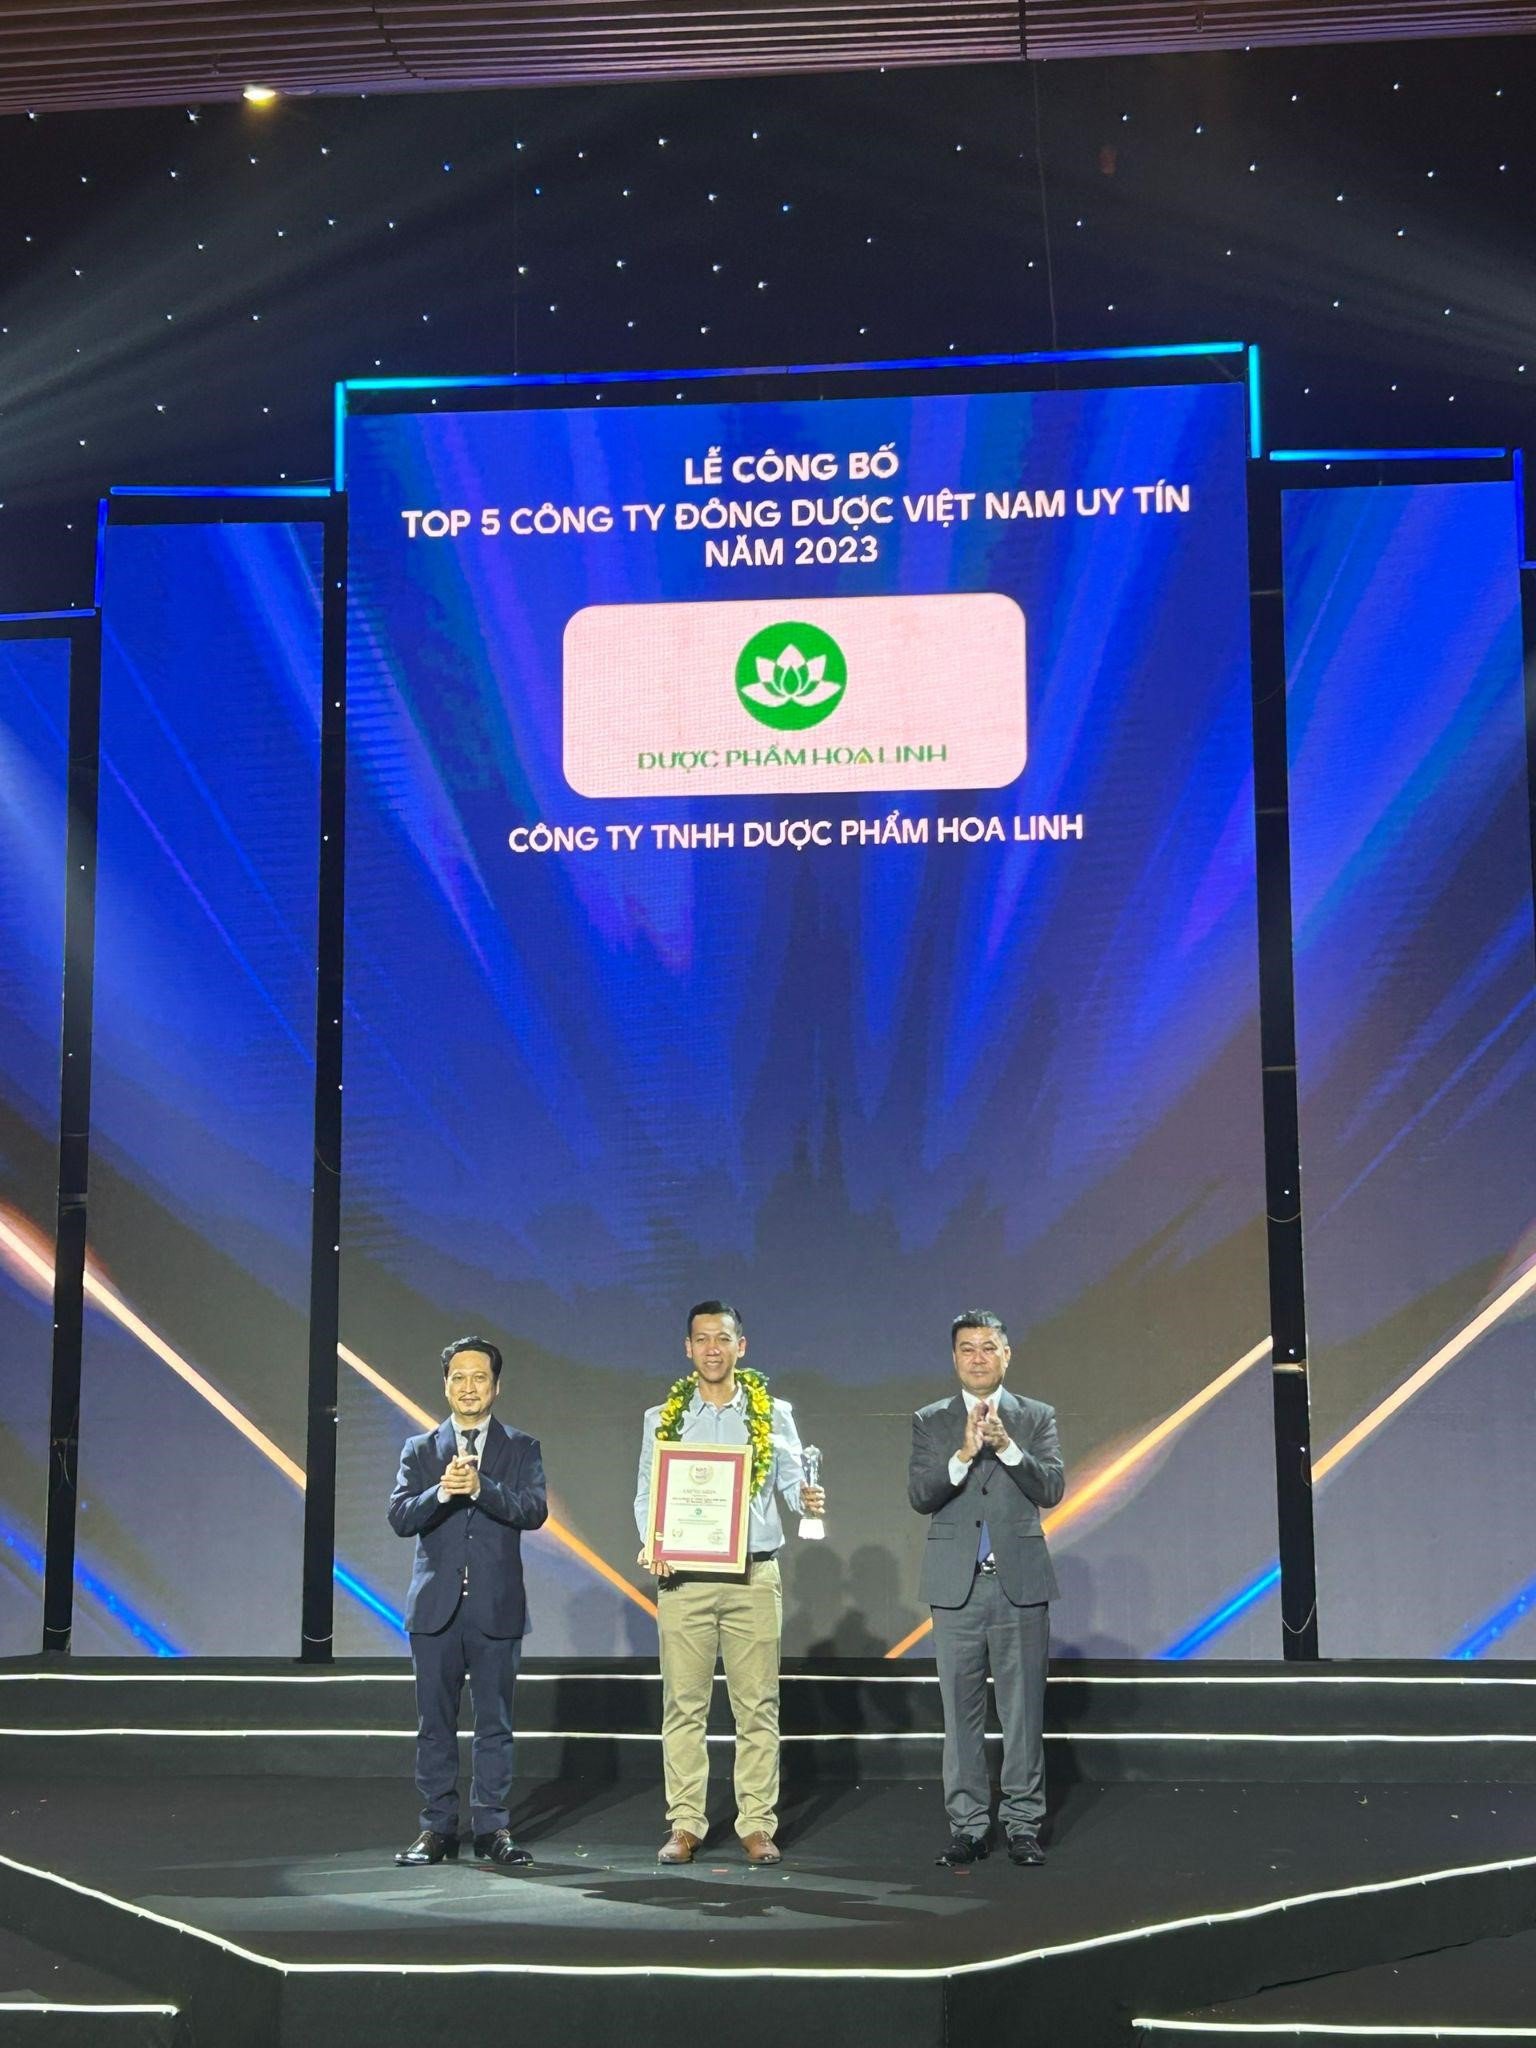 Đại diện Công ty Dược phẩm Hoa Linh nhận giải thưởng Top 5 Công ty đông dược Việt Nam uy tín năm 2023